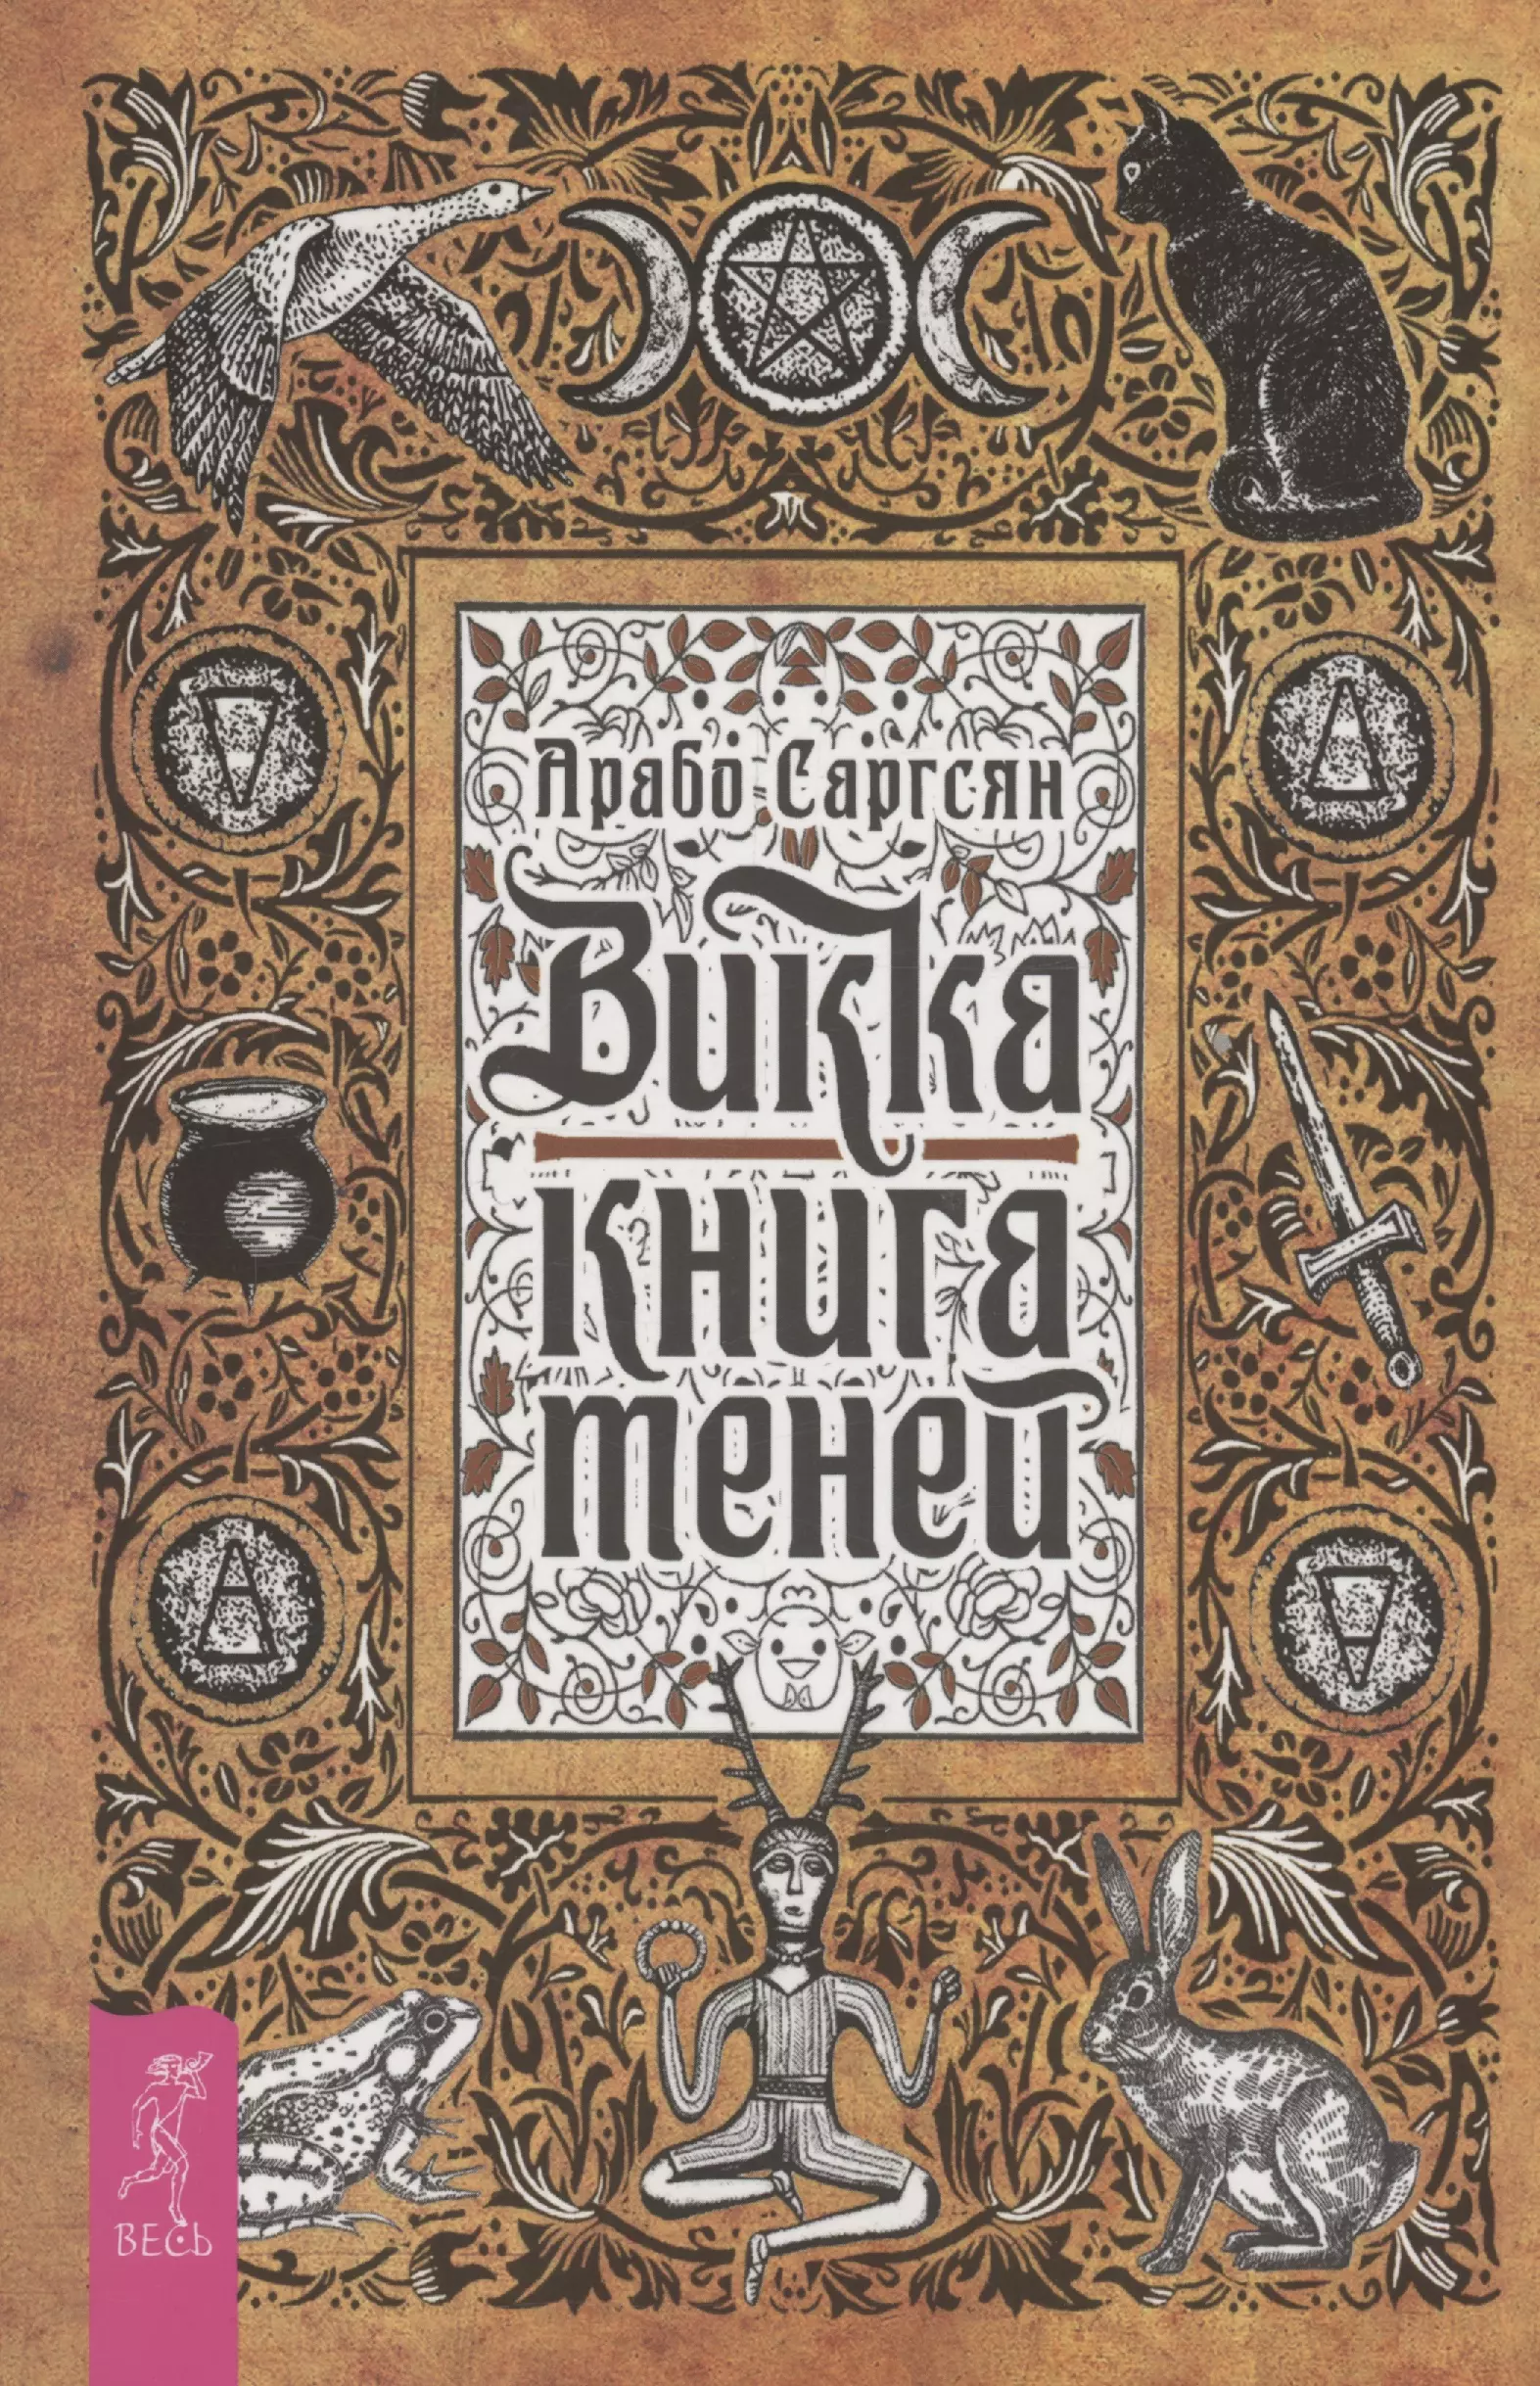 Саргсян Арабо Викка: книга теней (6295)